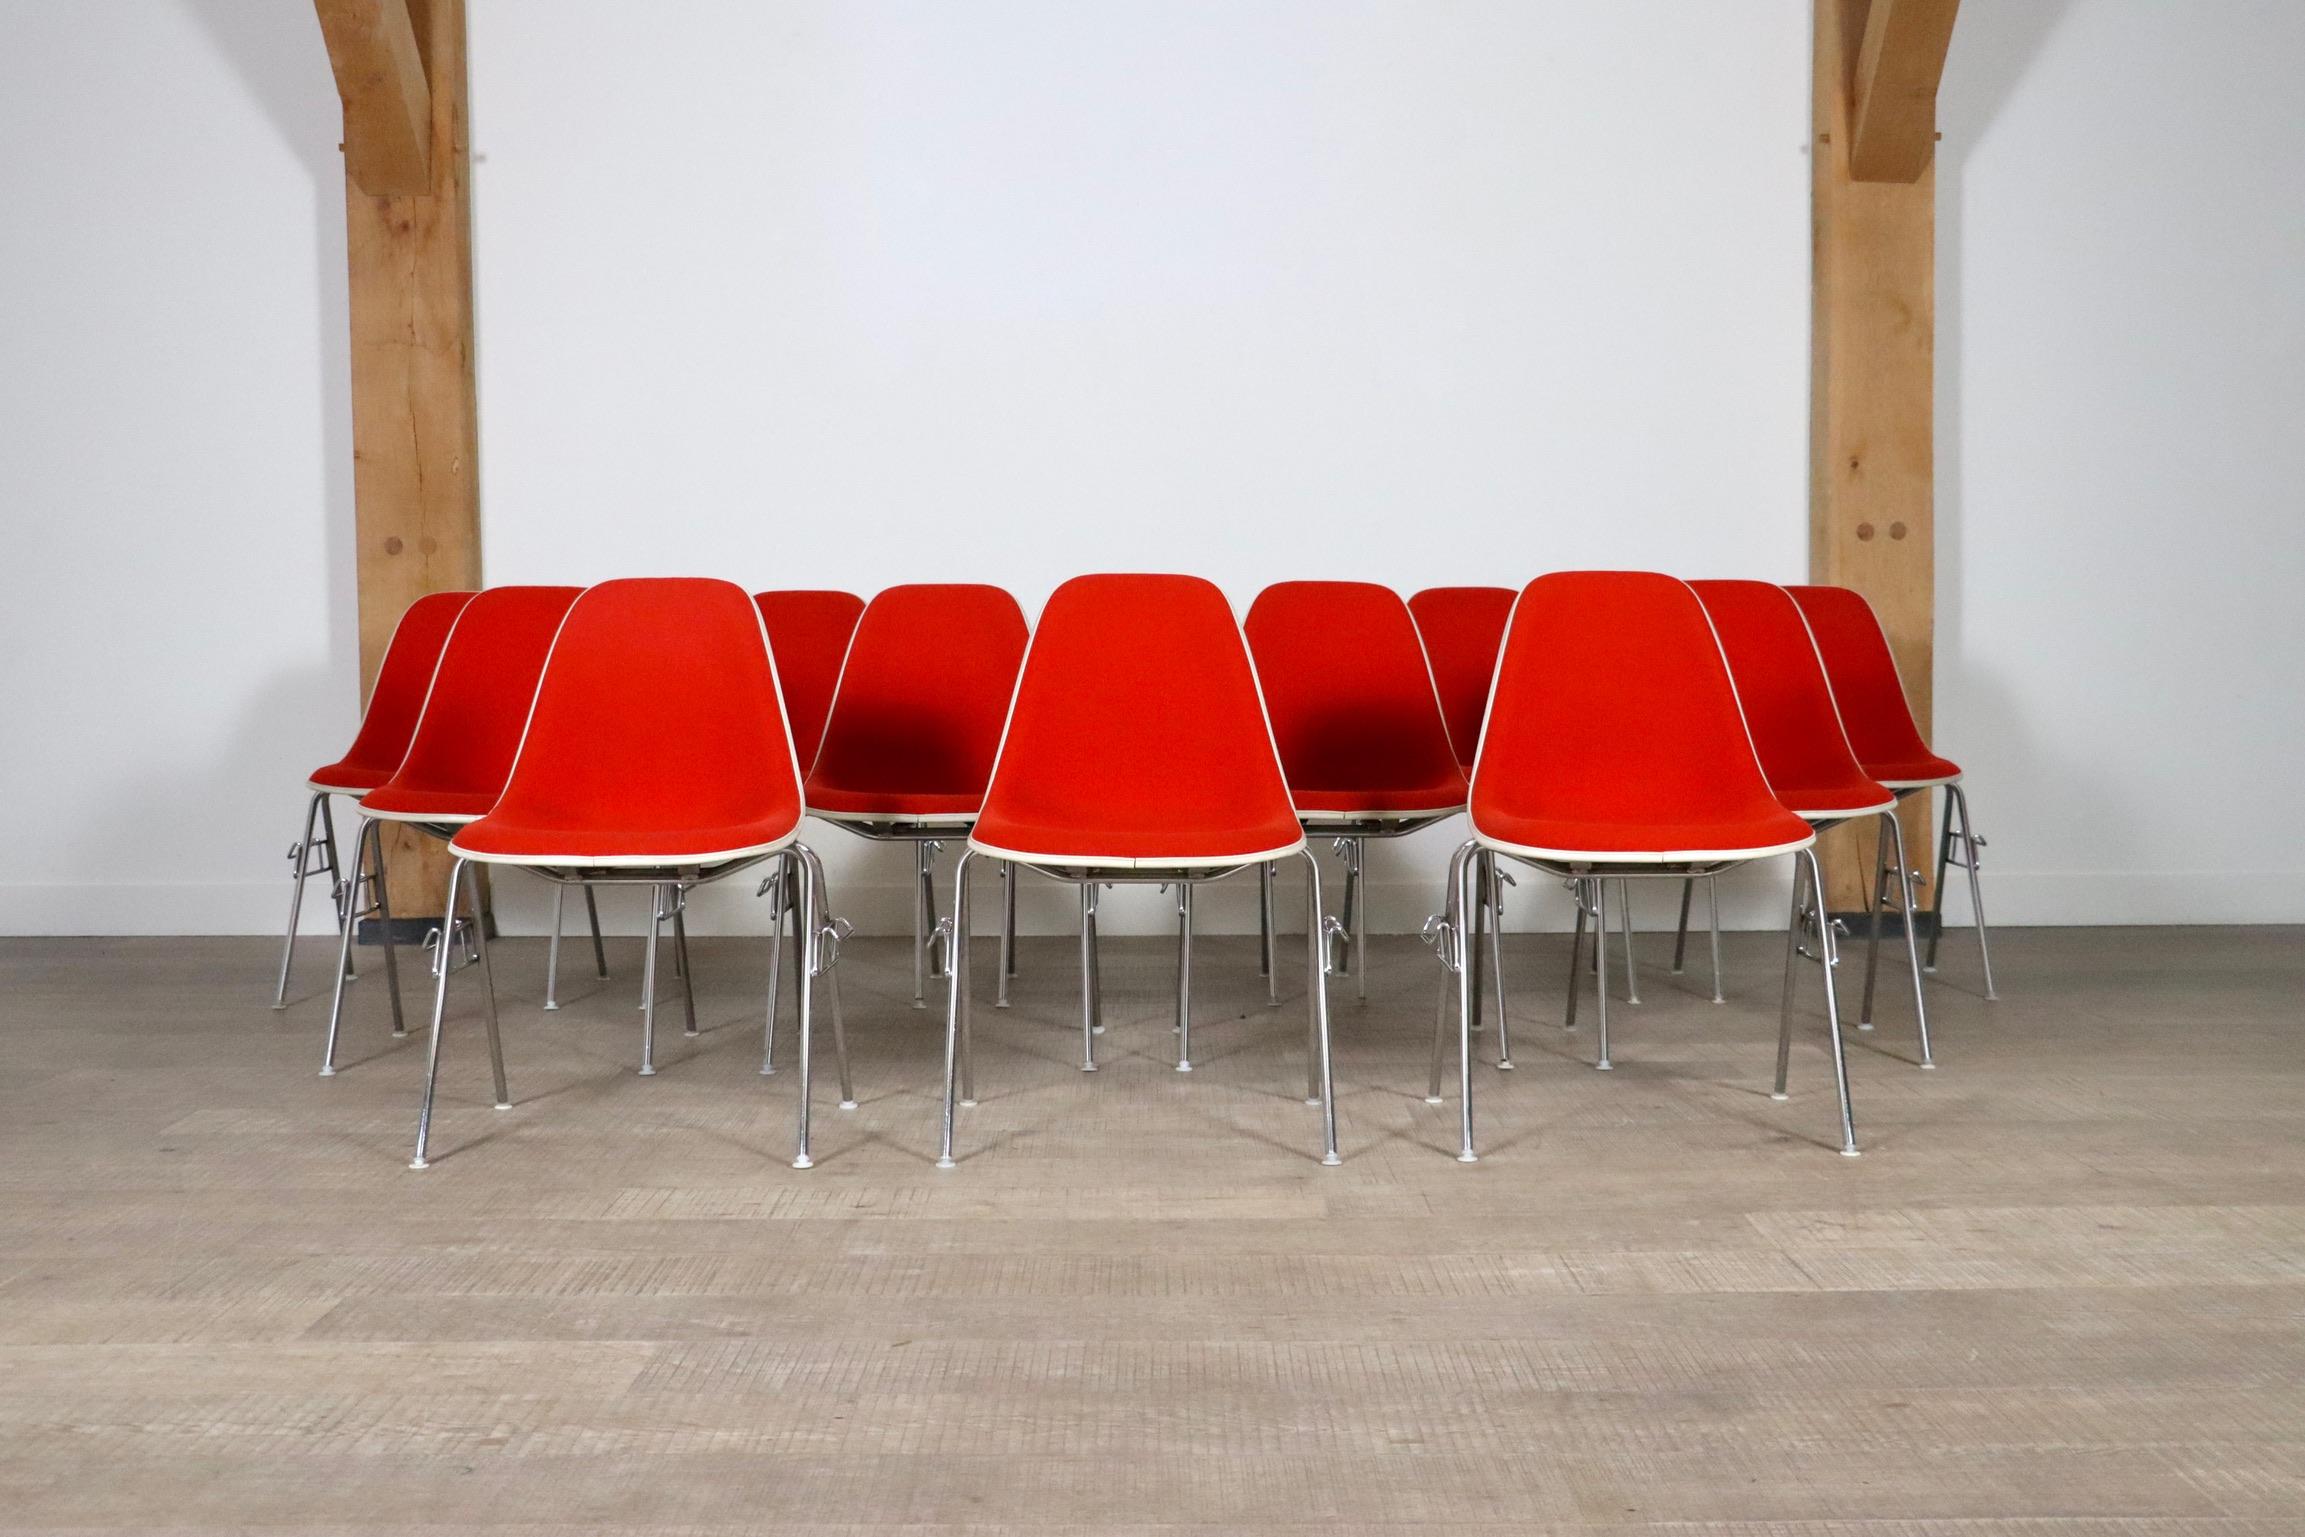 Bel ensemble de 12 chaises empilables modèle DSS par Charles et Ray Eames pour Herman Miller. Cet ensemble est fabriqué à partir d'une coque en fibre de verre et est tapissé en rouge avec un bord blanc. Un bel ensemble qui peut être facilement